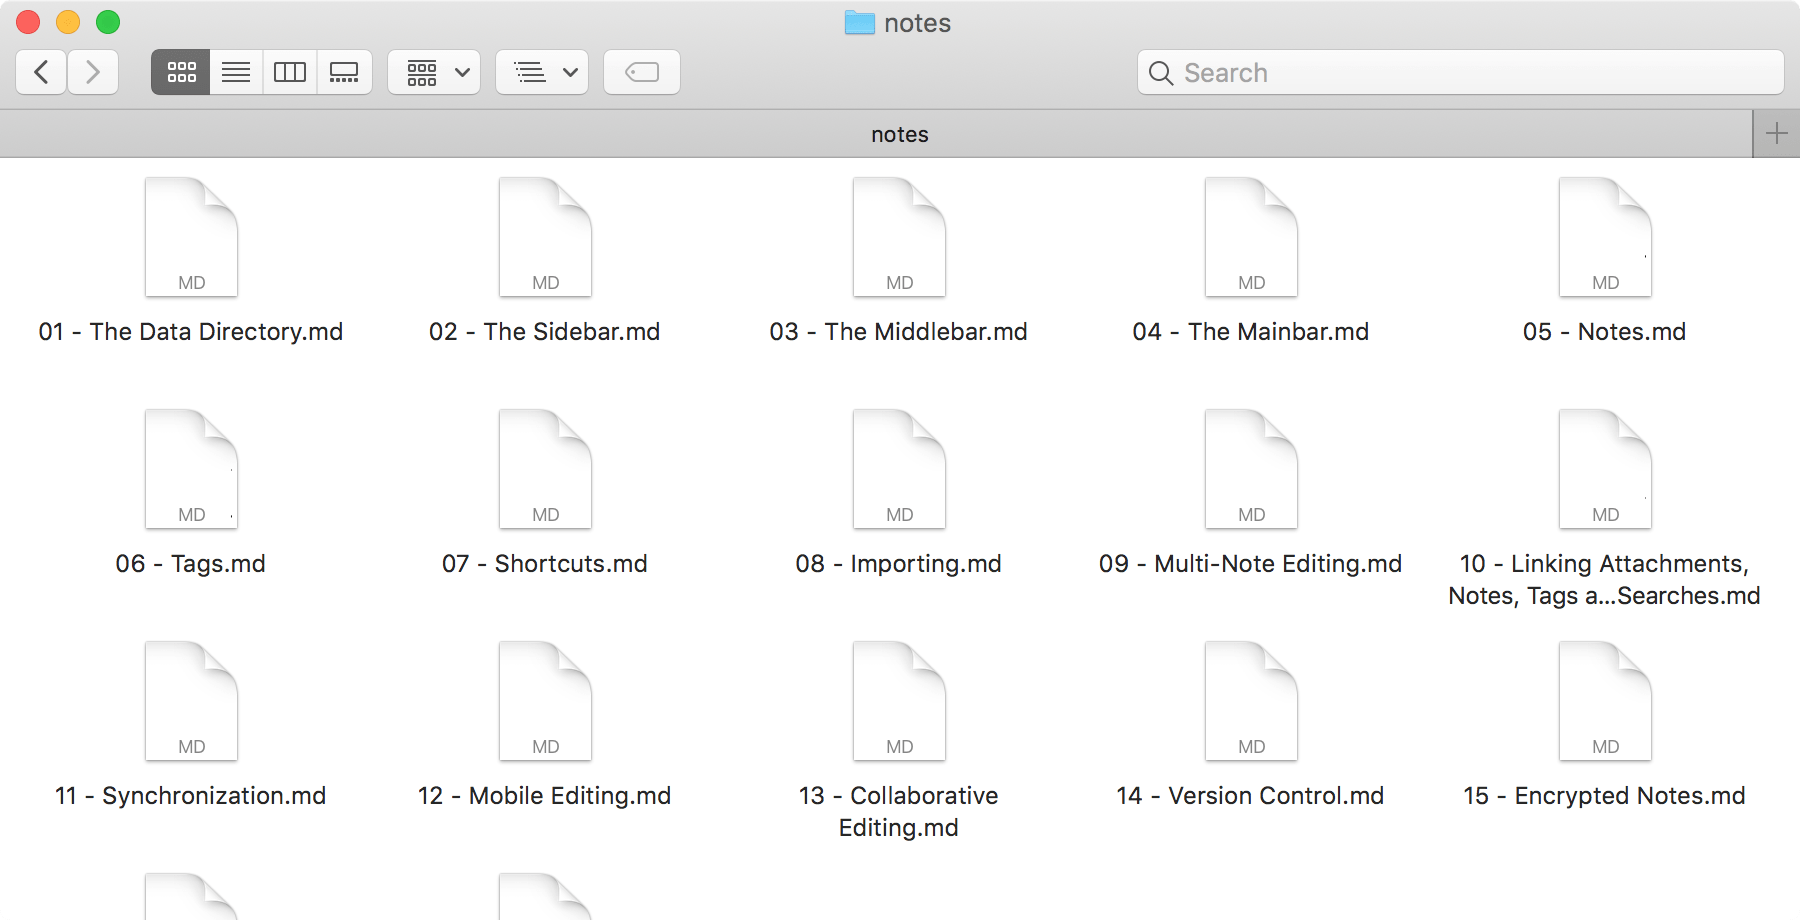 Filesystem